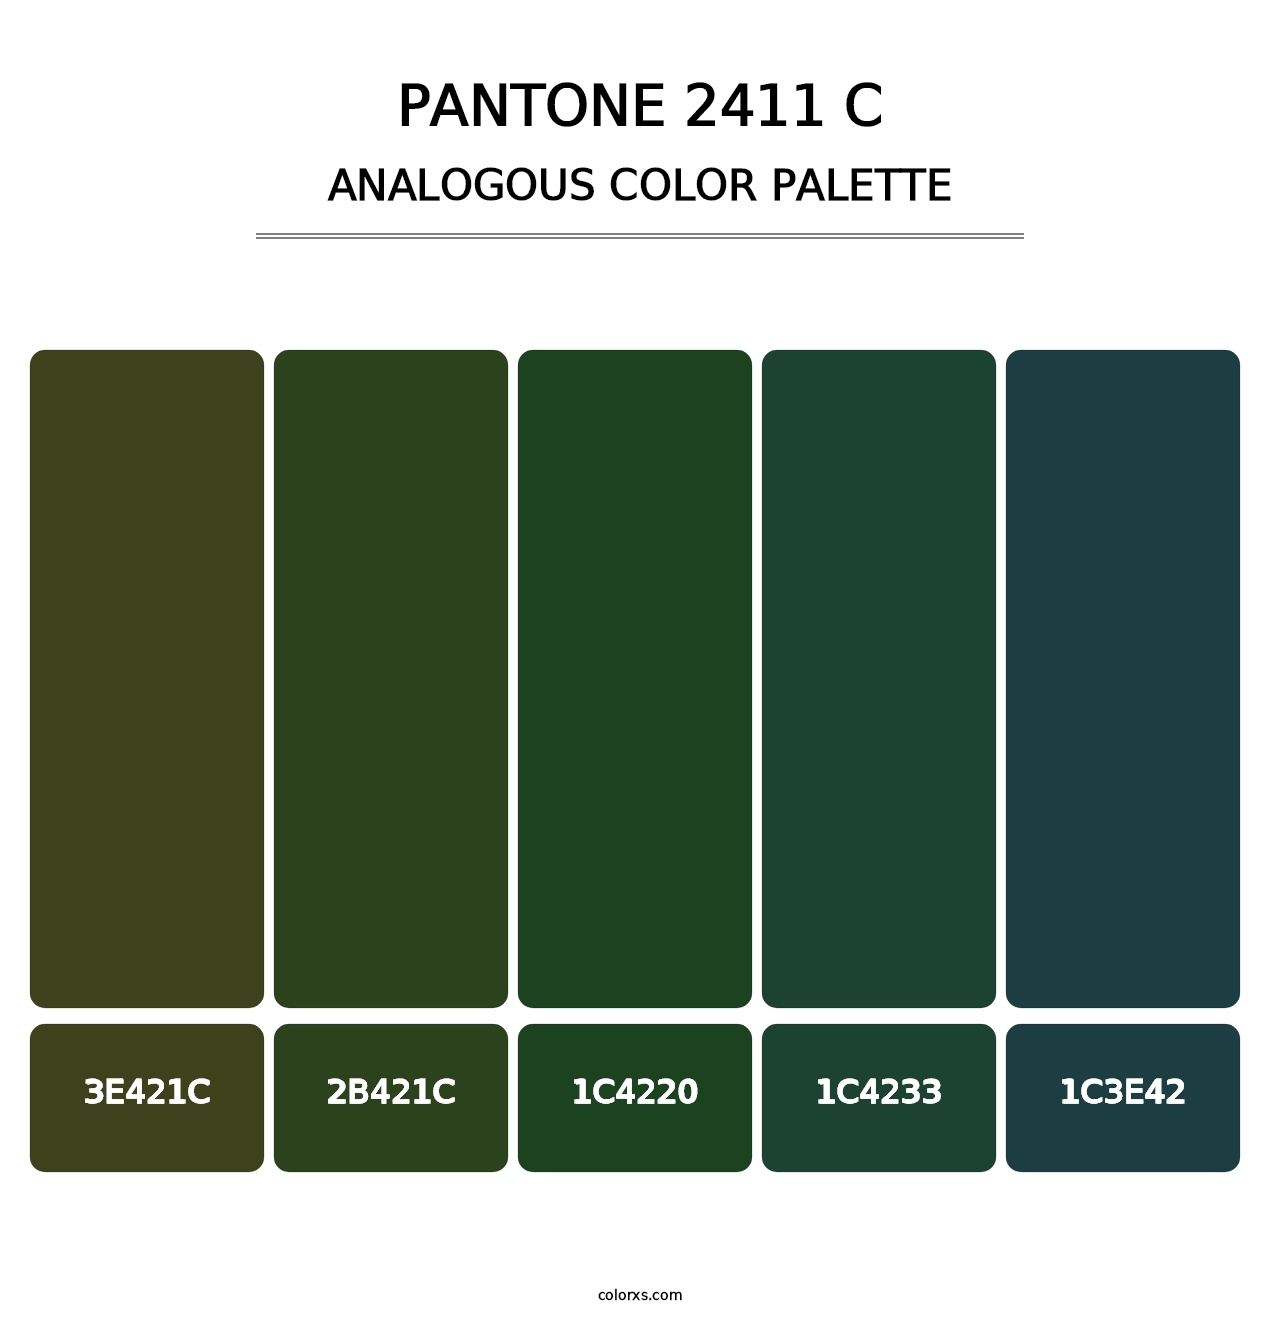 PANTONE 2411 C - Analogous Color Palette